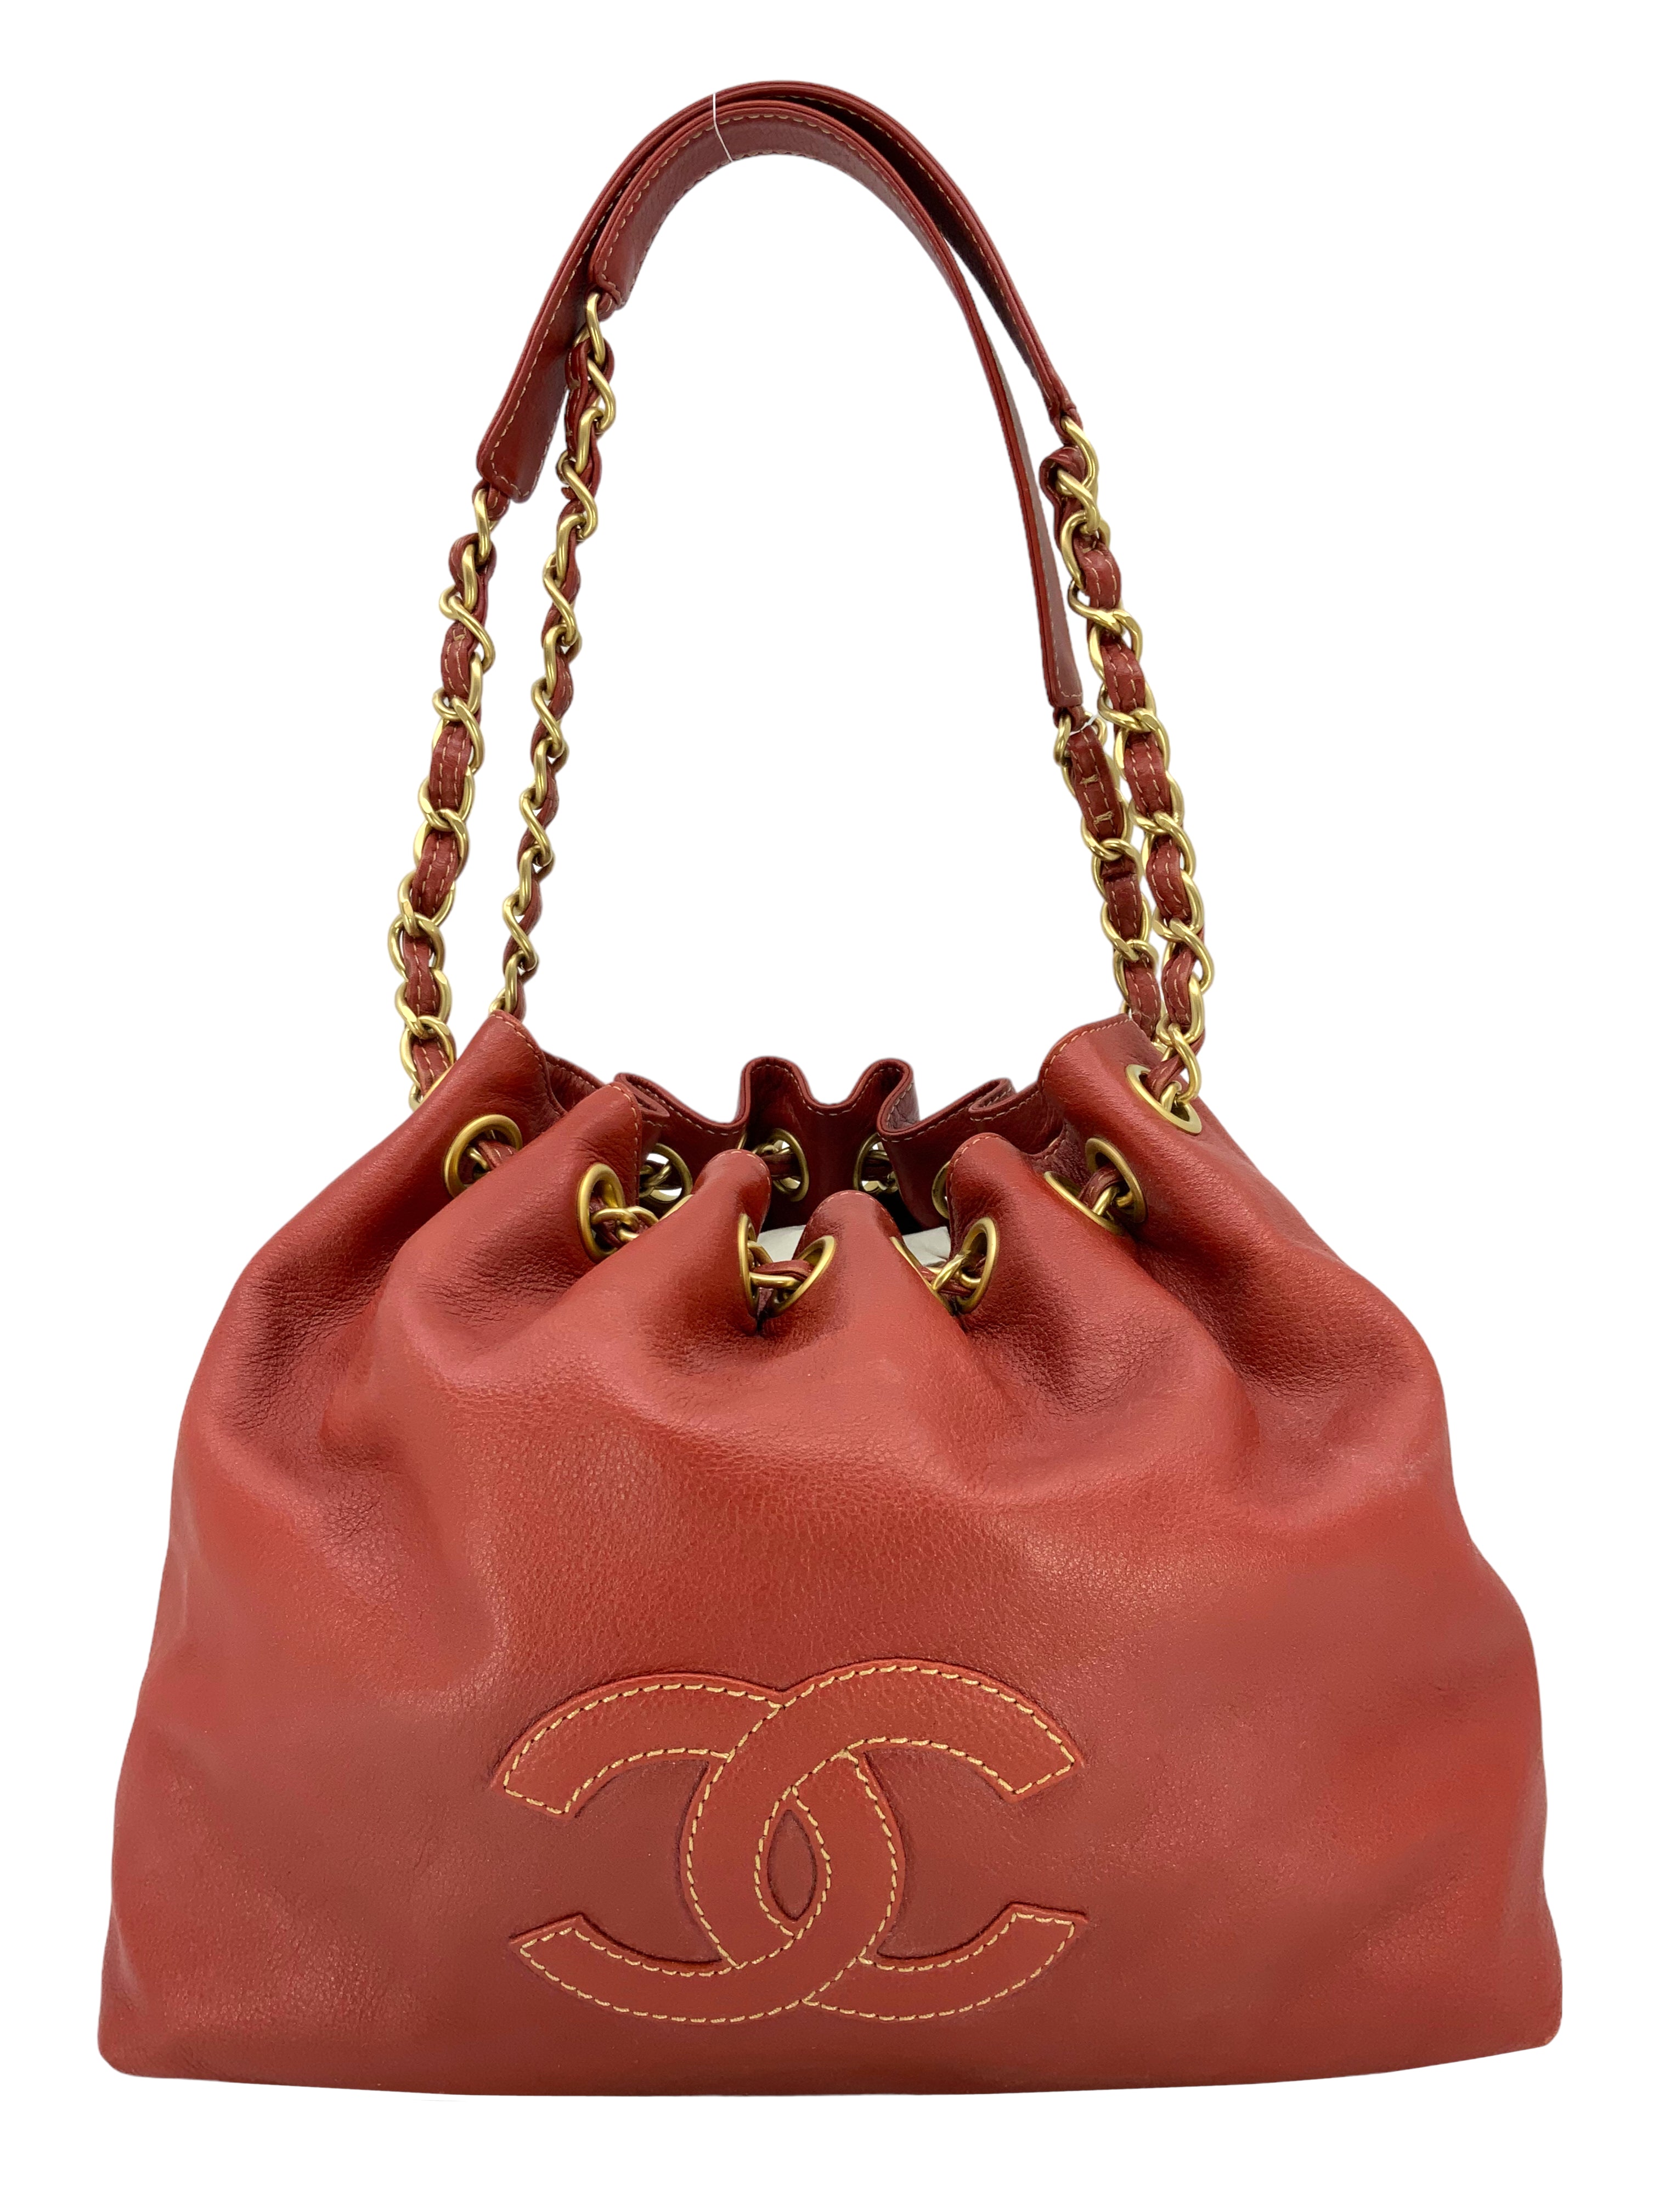 CHANEL Vintage Leather Drawstring Bucket Shoulder Bag - Consigned Designs